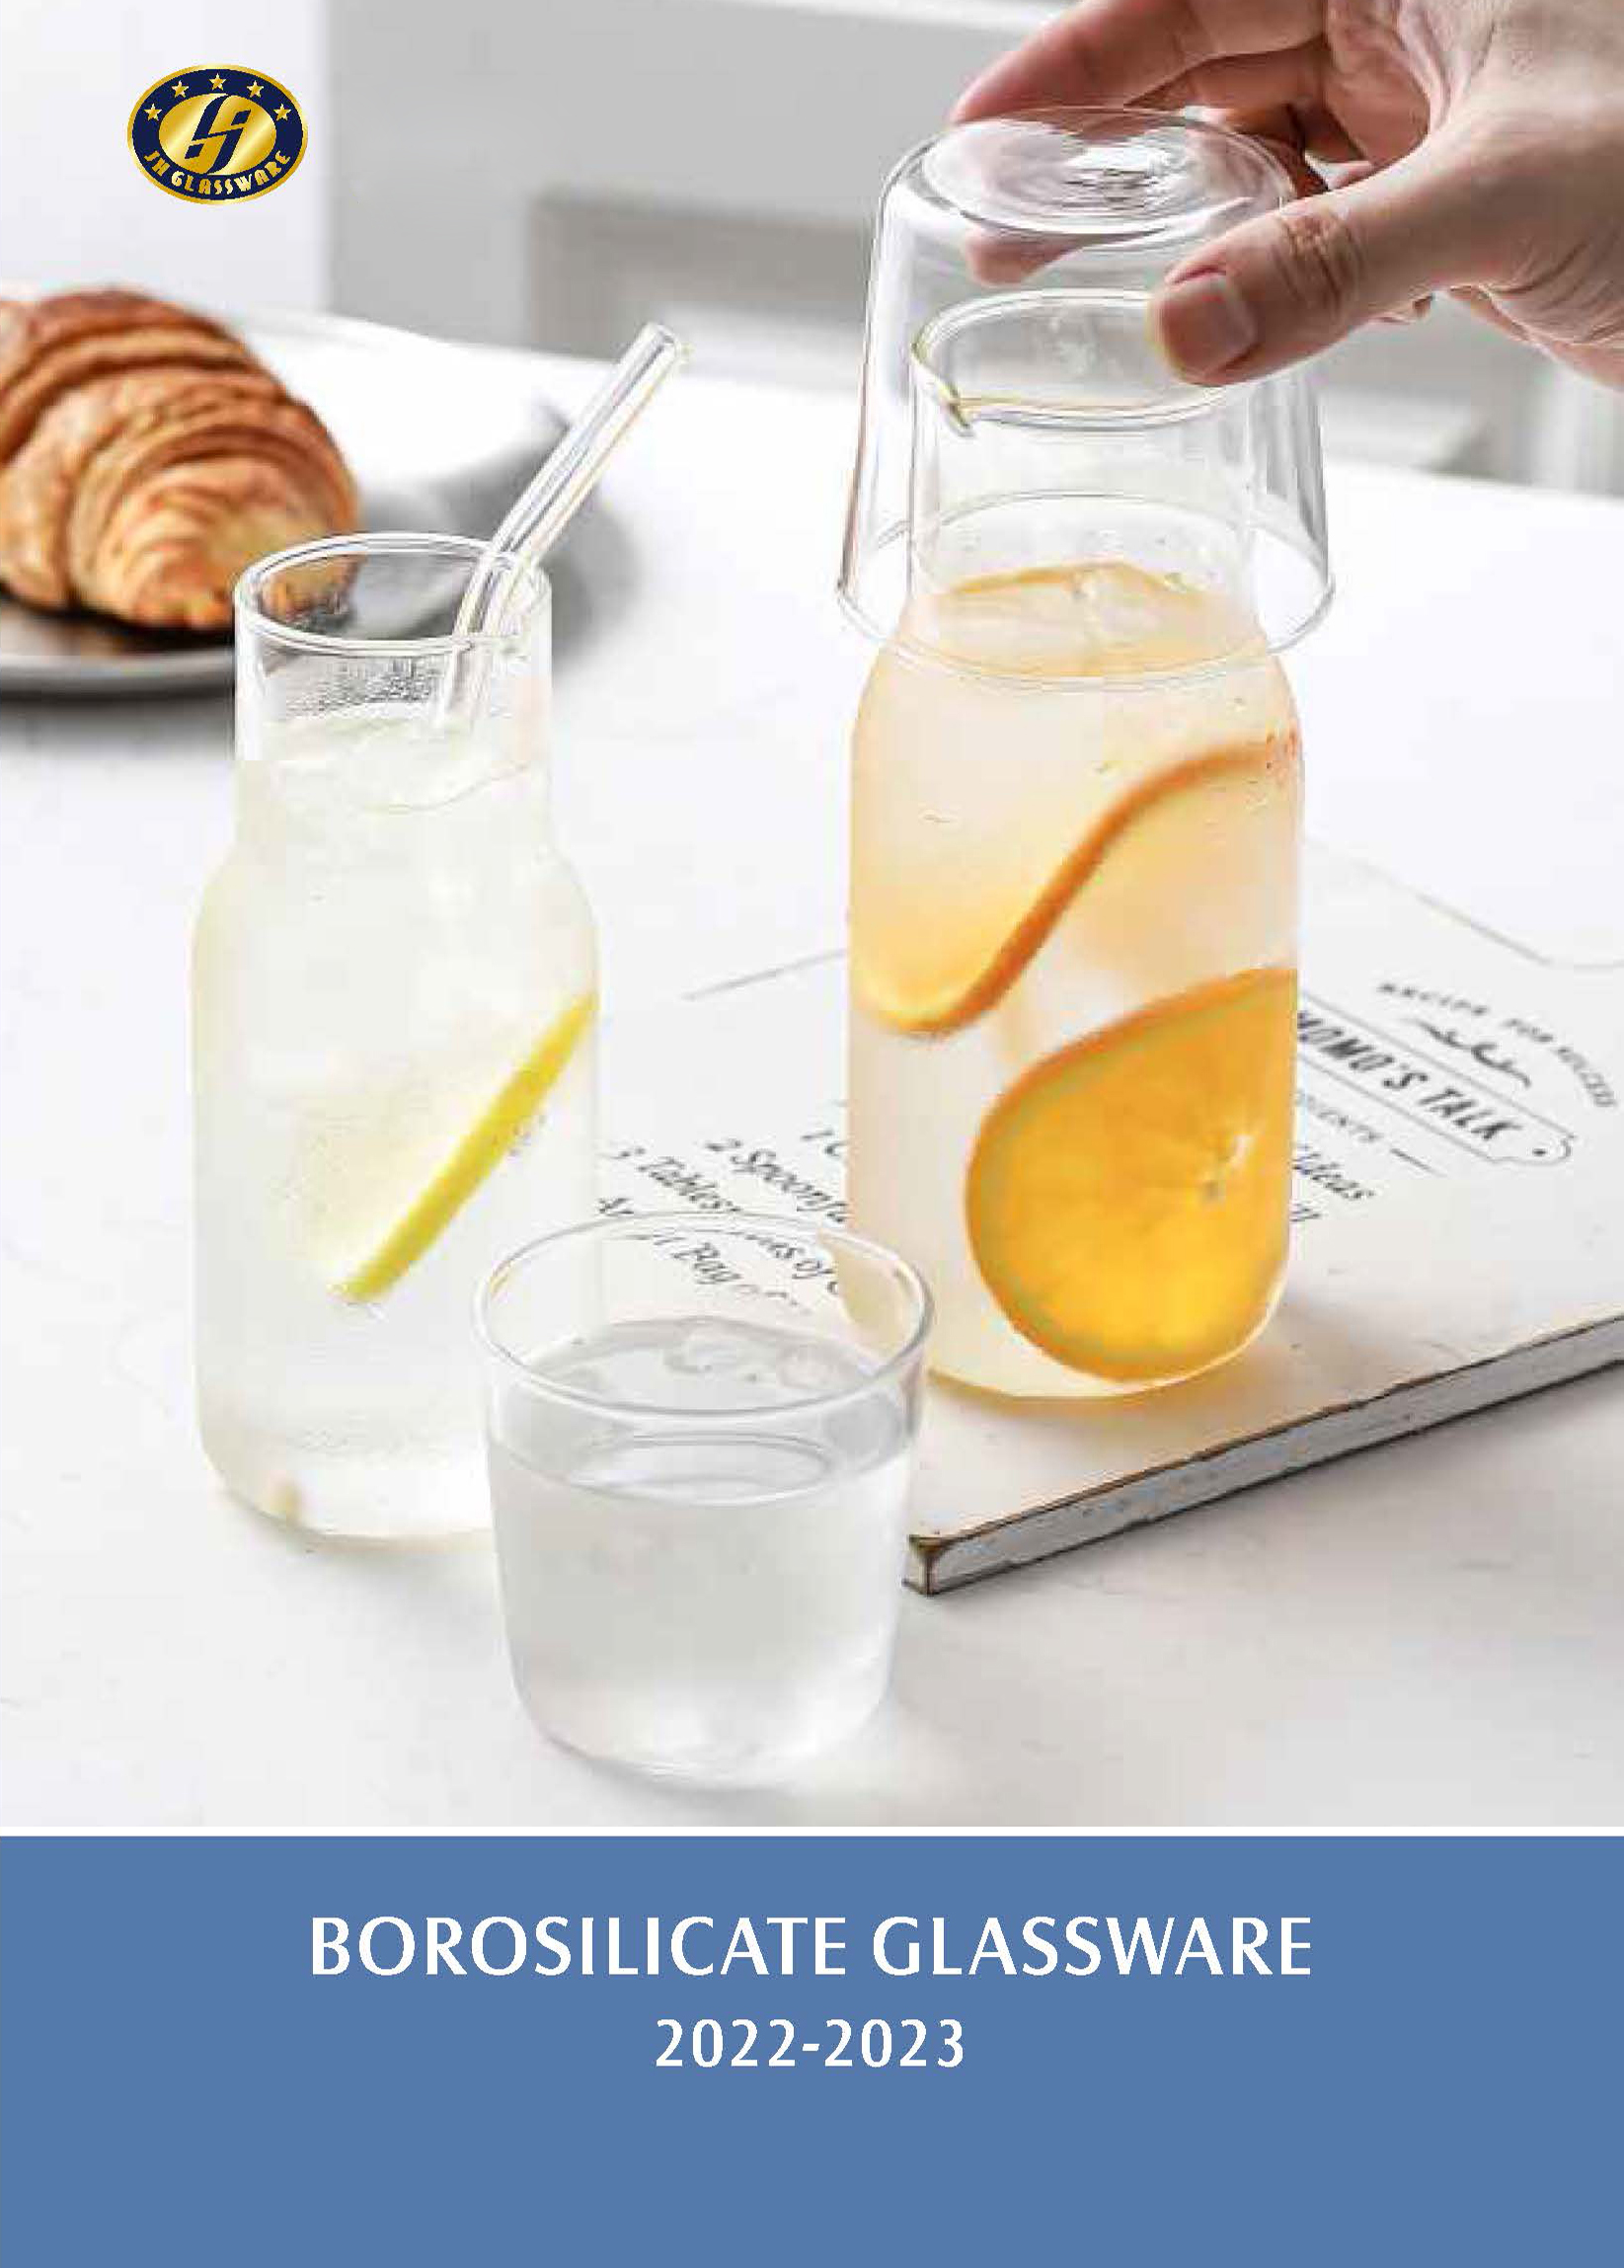 BOROSILICATE GLASSWARE